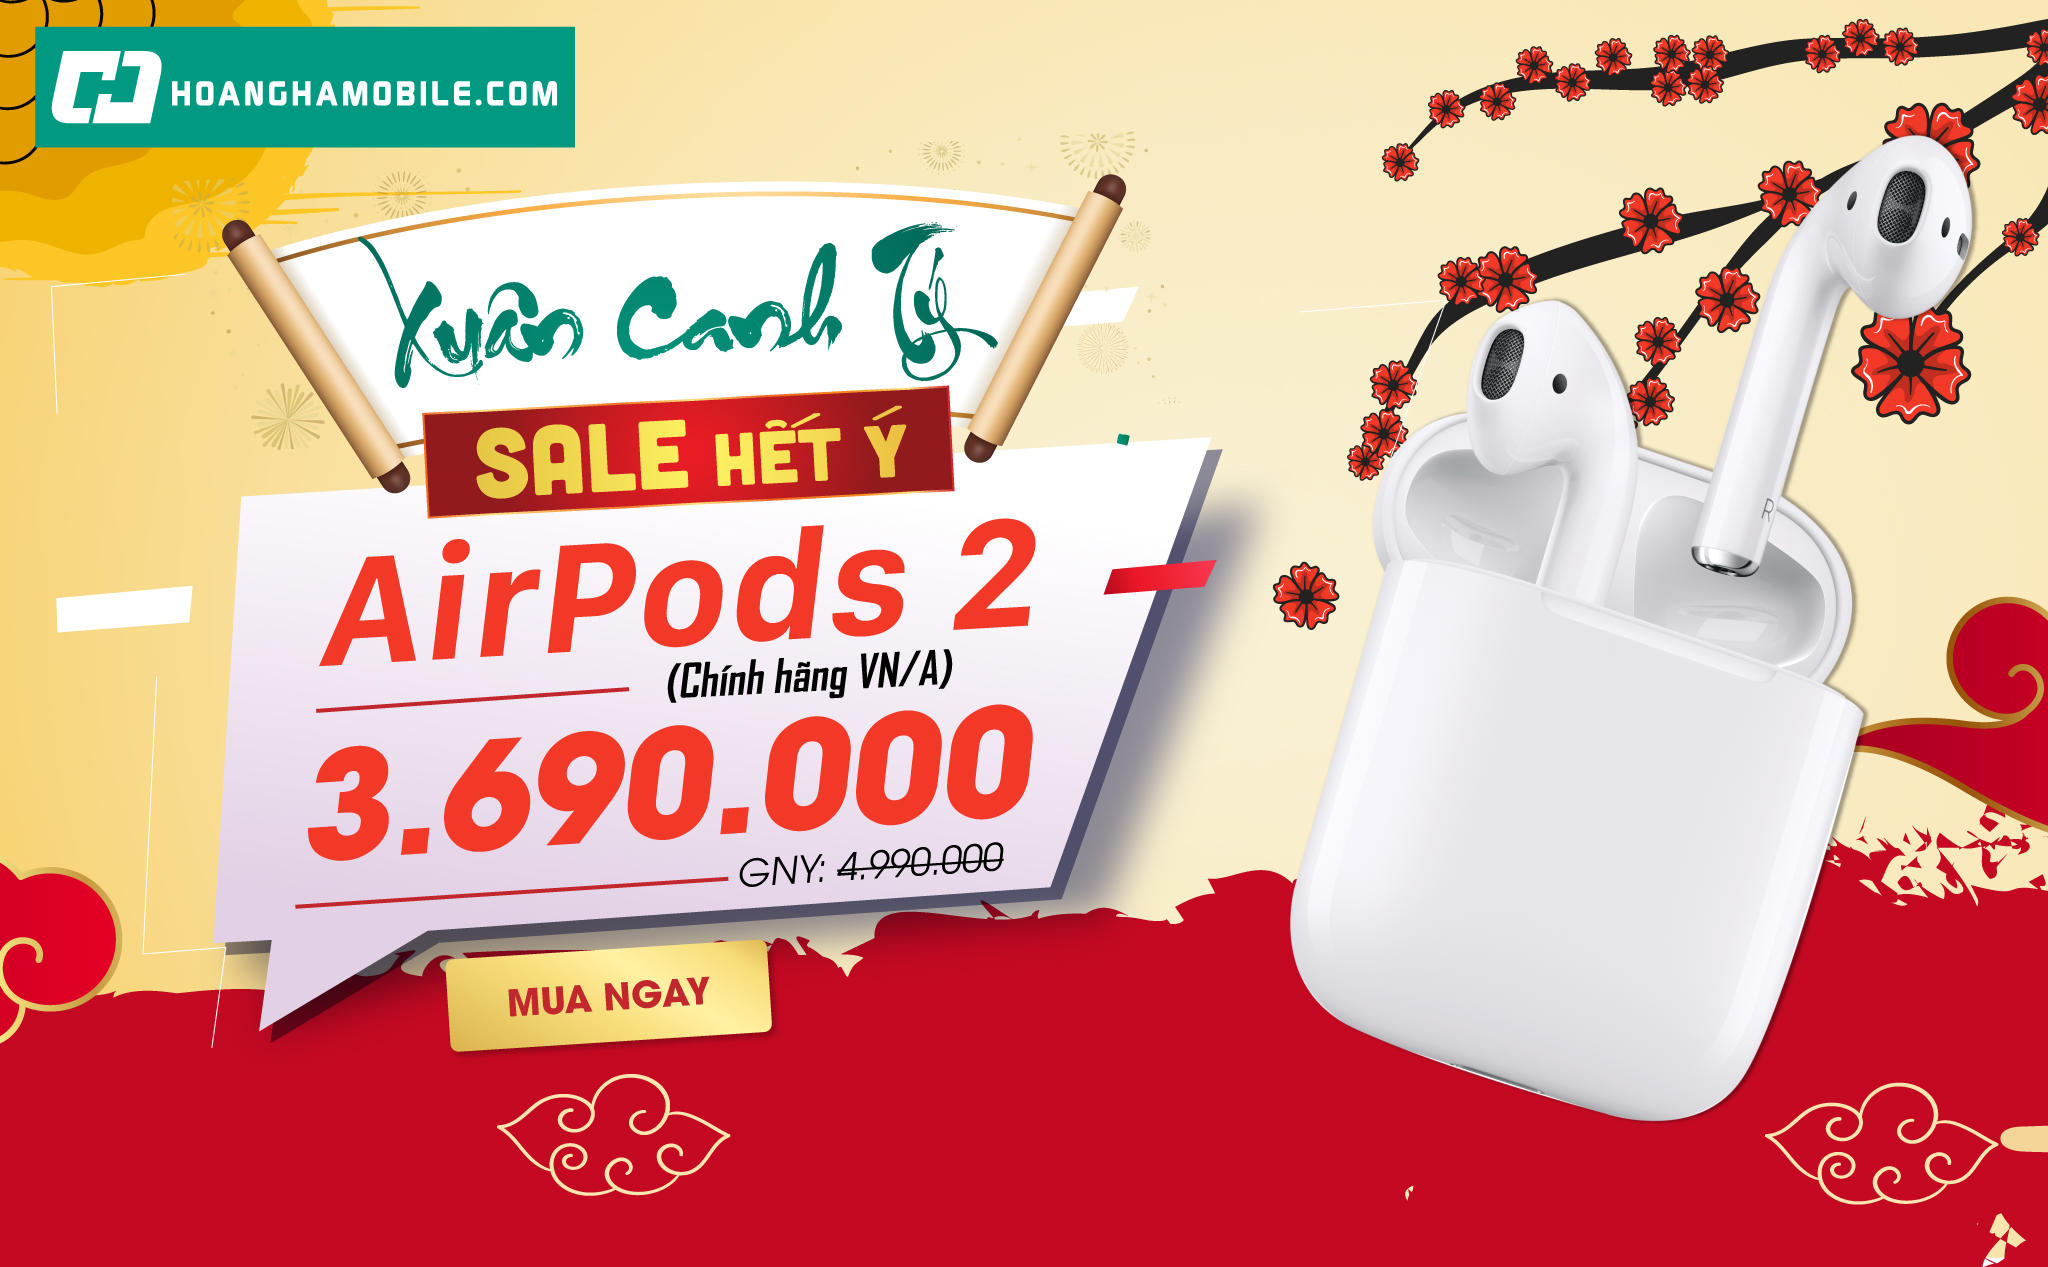 [QC] Hotdeal mừng xuân - Airpods 2 chính hãng VN/A chỉ hơn 3 triệu